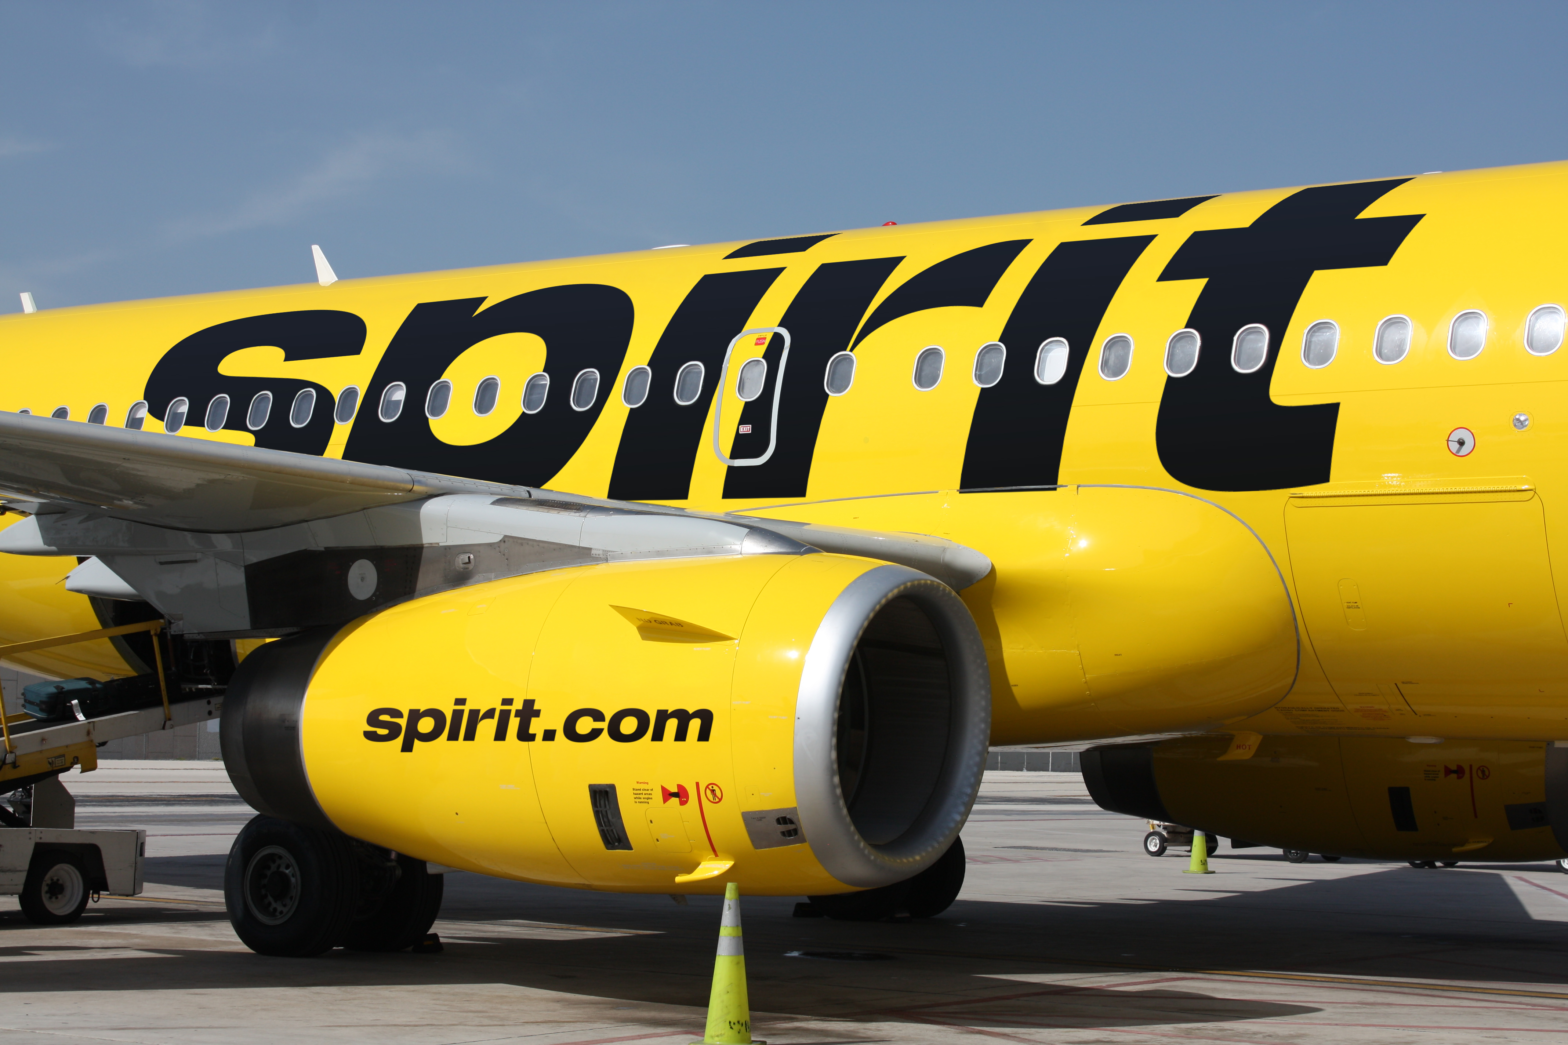 Spirit Airlines Shareholders Approve JetBlue's $3.8 Billion Offer